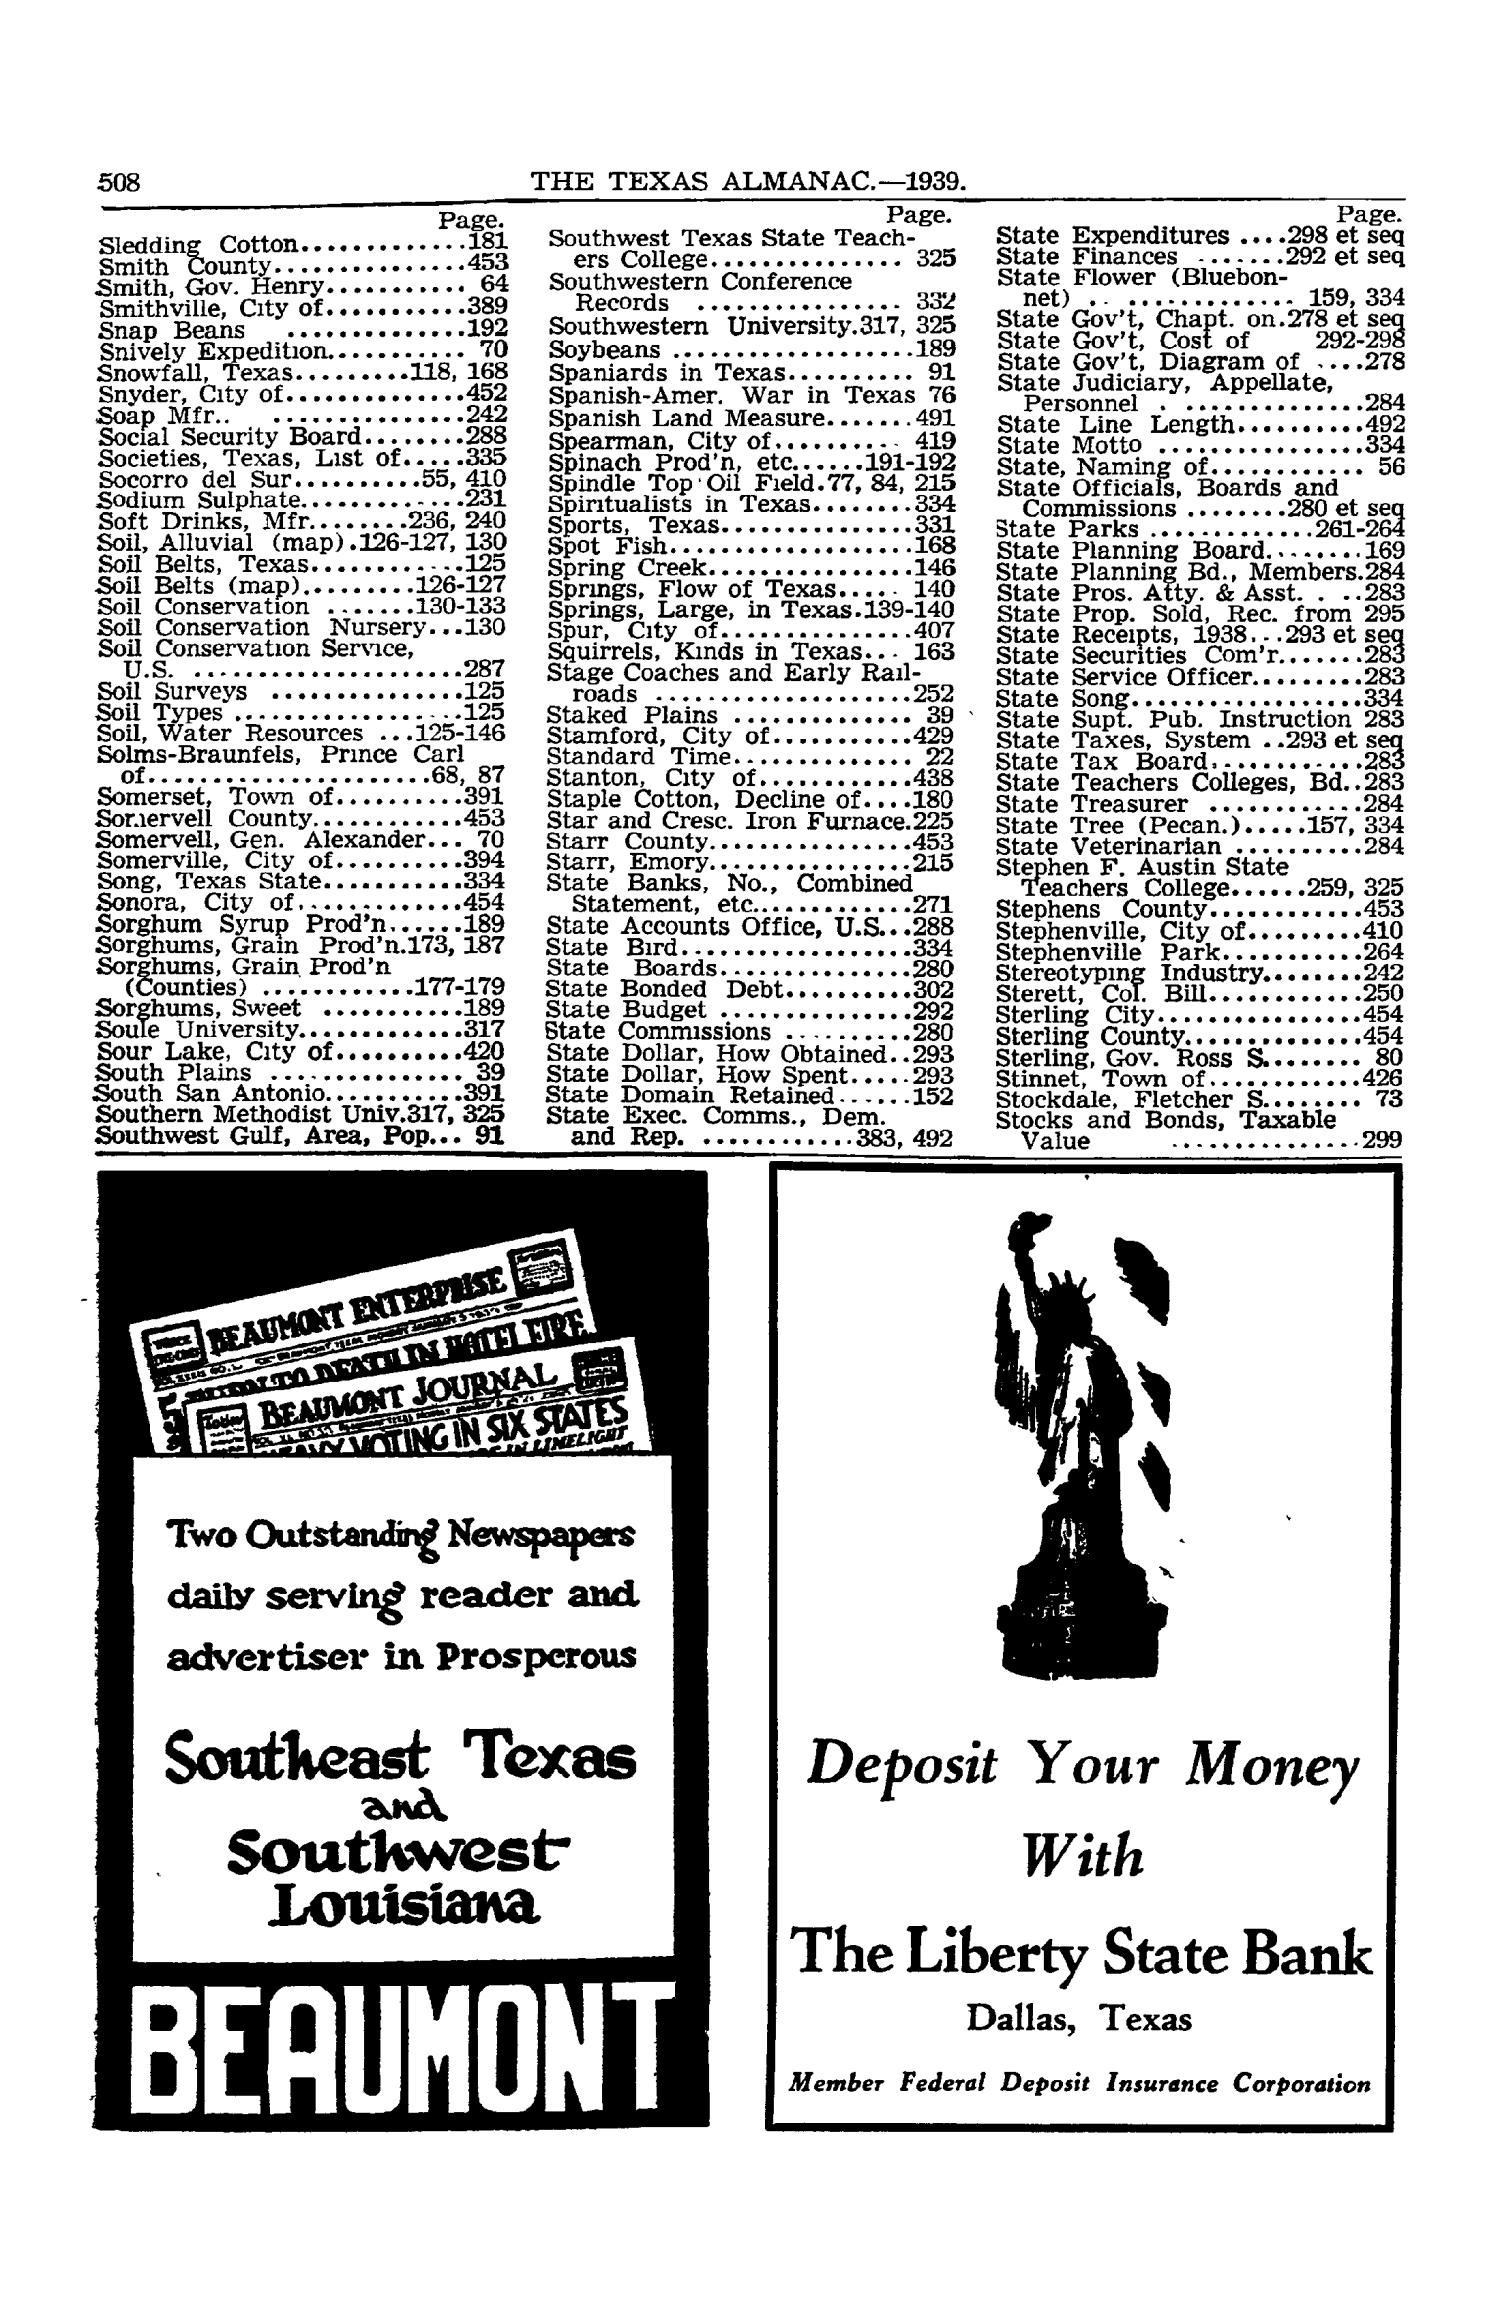 Texas Almanac, 1939-1940
                                                
                                                    508
                                                